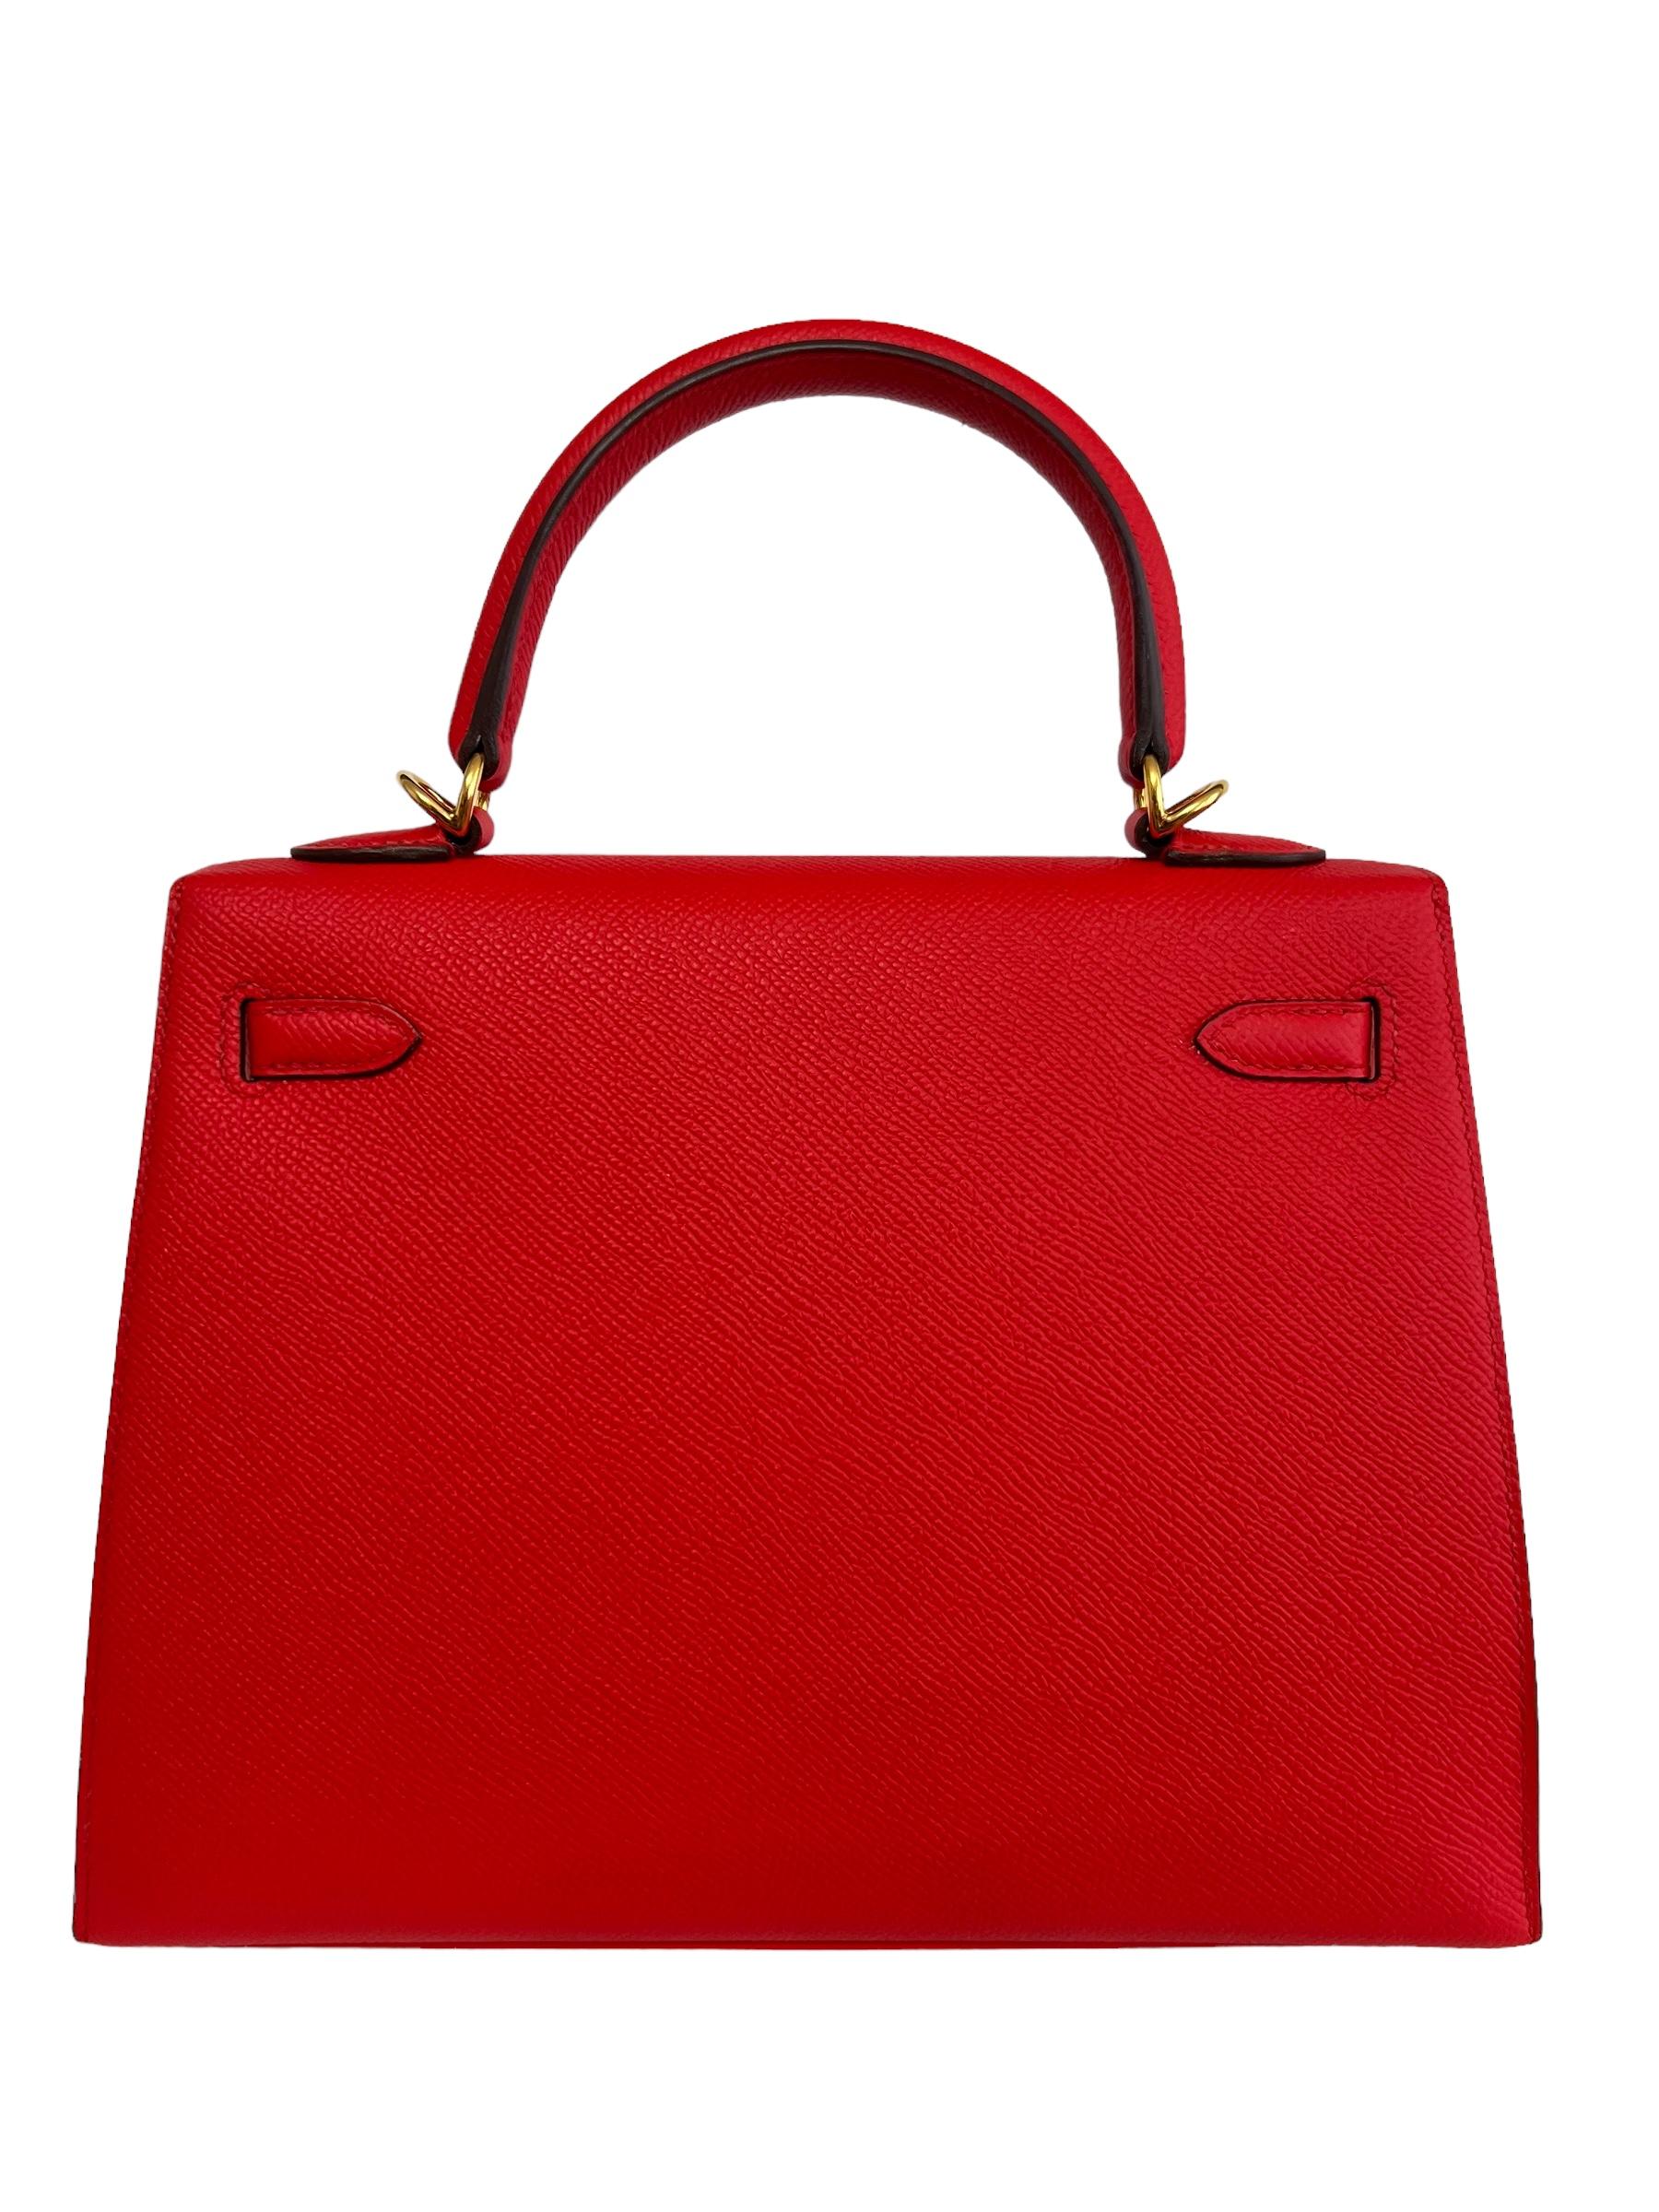 Women's or Men's Hermes Kelly 25 Rouge de Coeur Red Epsom Leather Shoulder Bag Gold Hardware